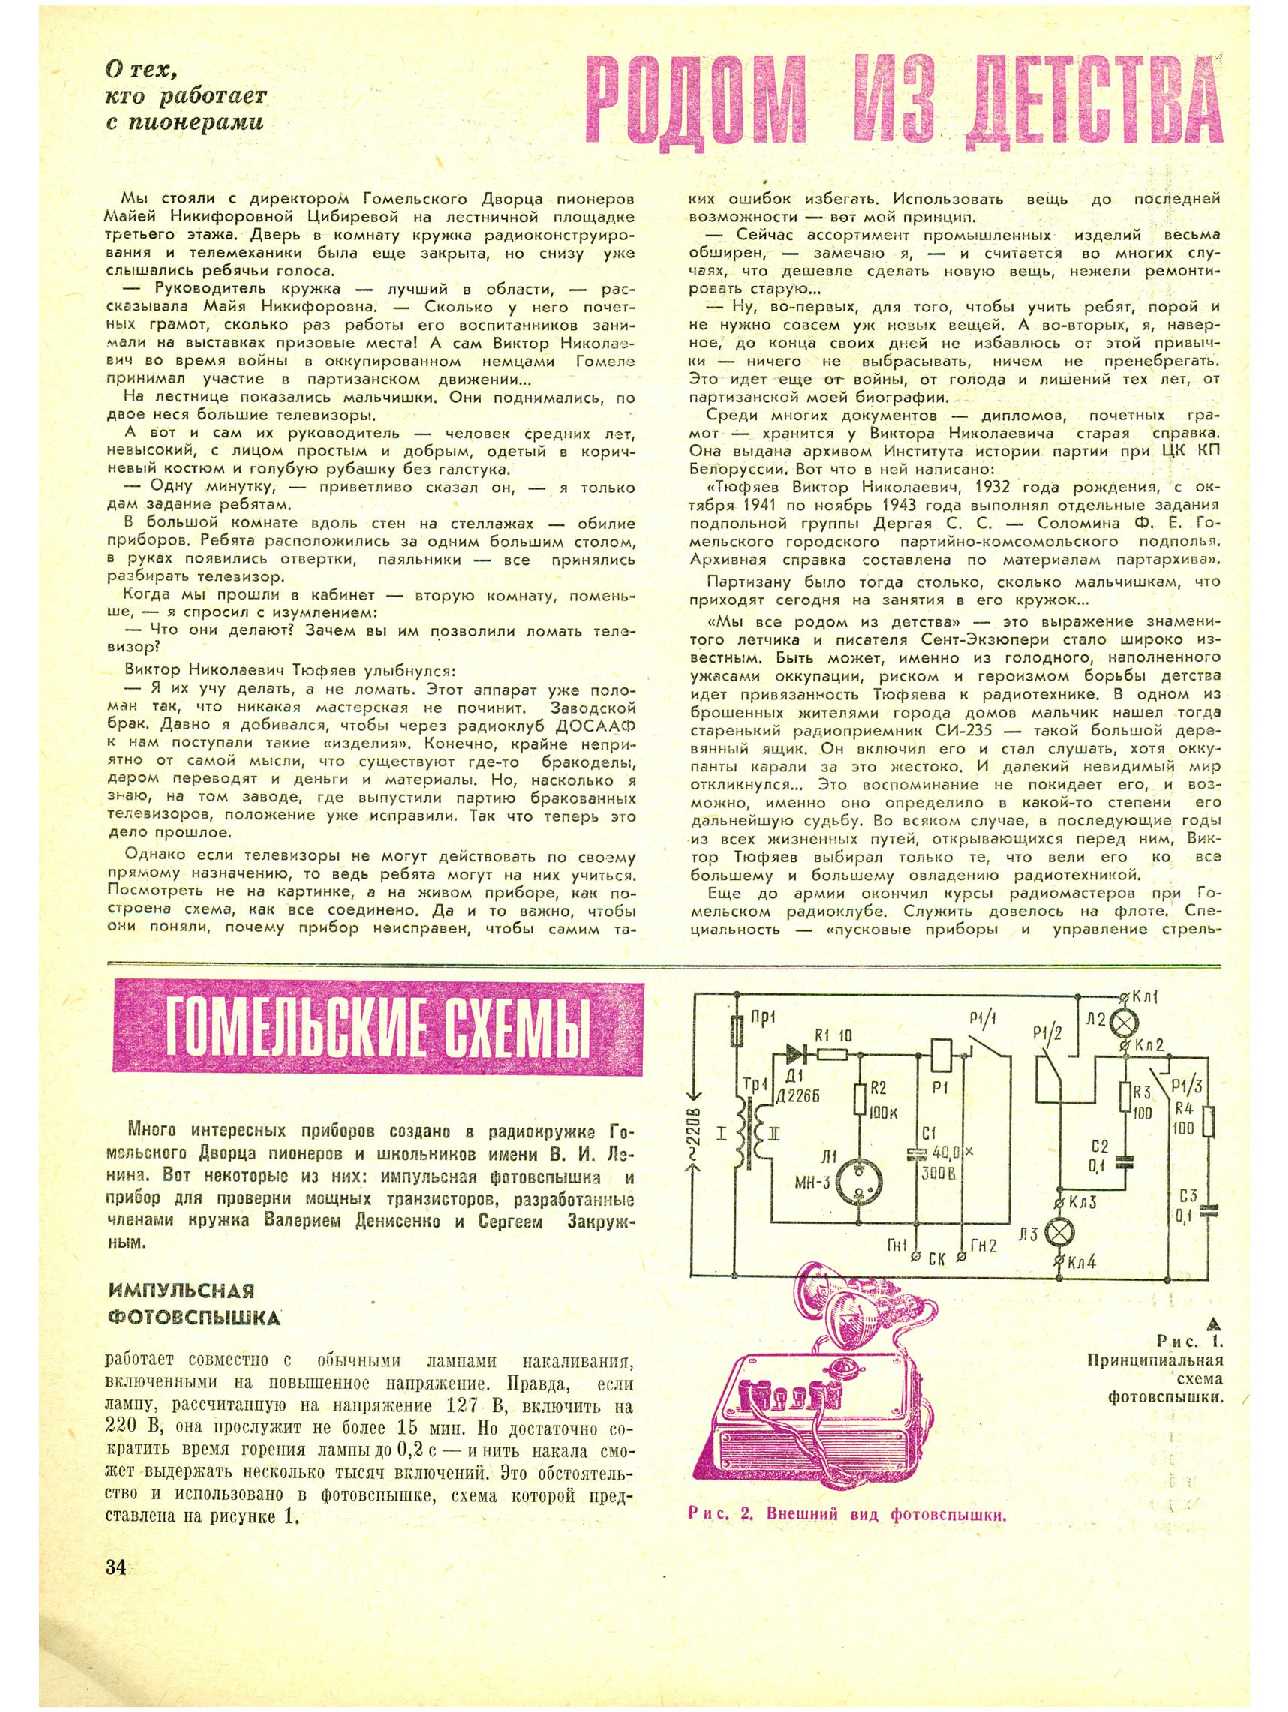 МК 12, 1974, 34 c.